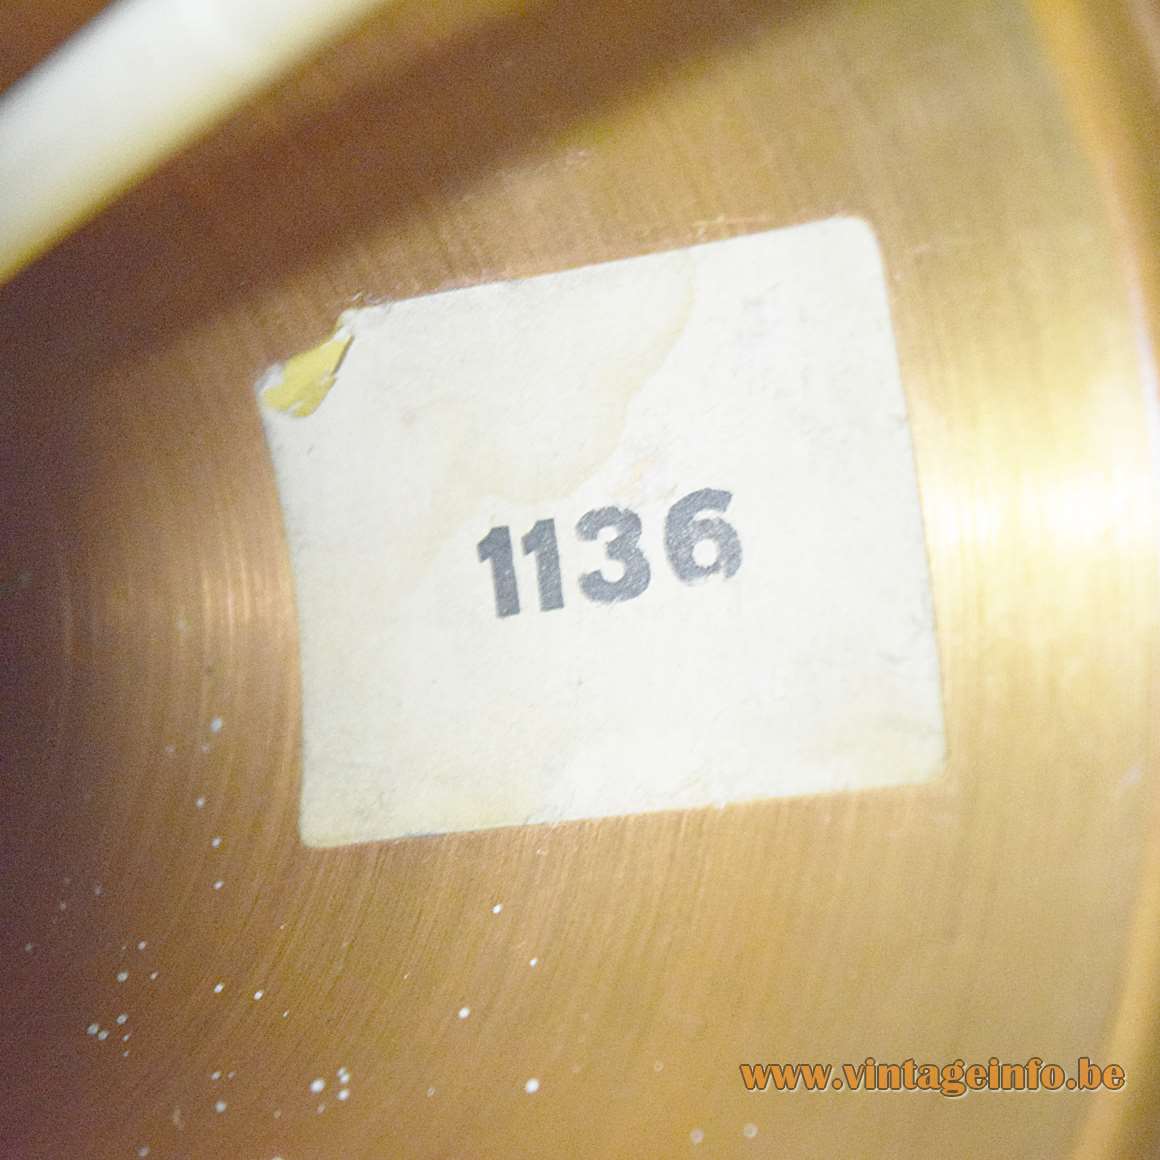 1960s Copper Wrinkle Paint Pendant Lamp - 1136 label